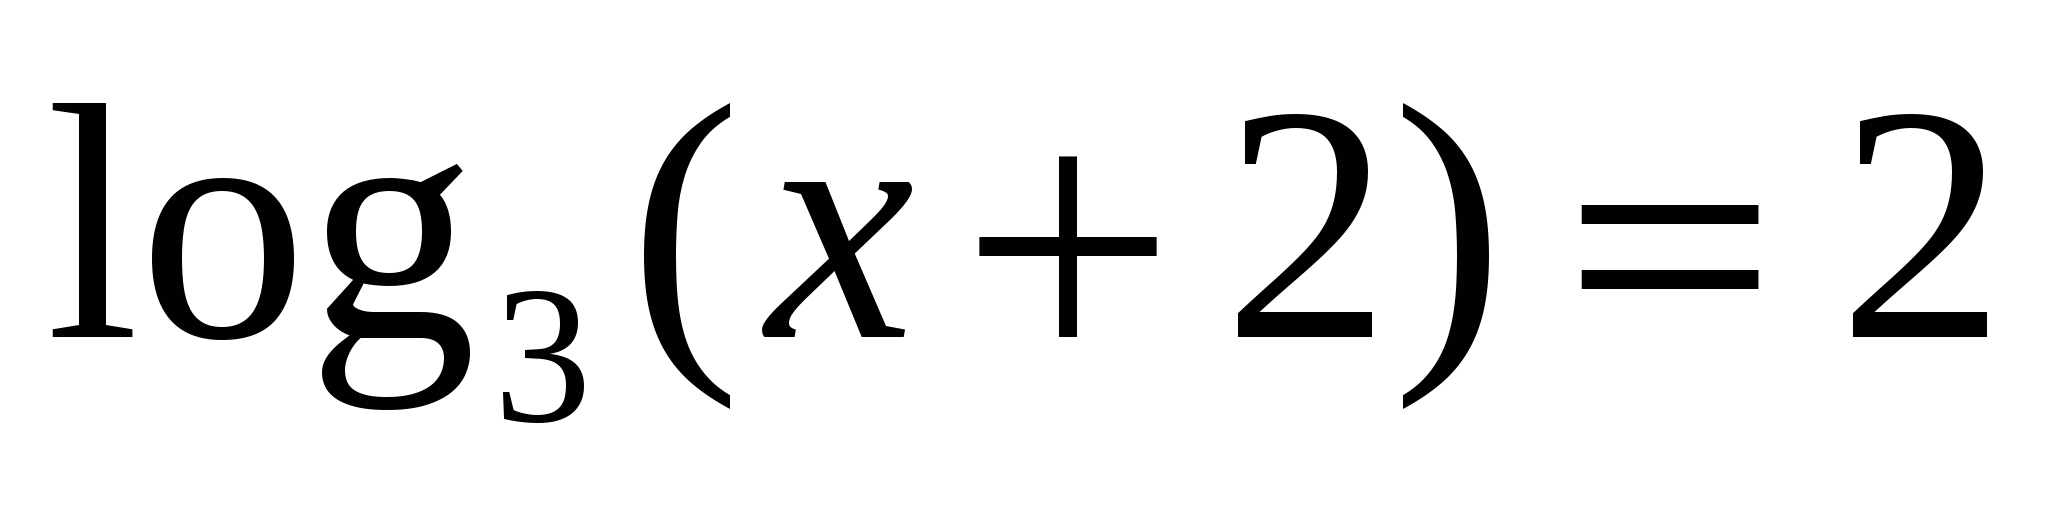 Конспект урока по алгебре Логарифмическая функция в уравнениях